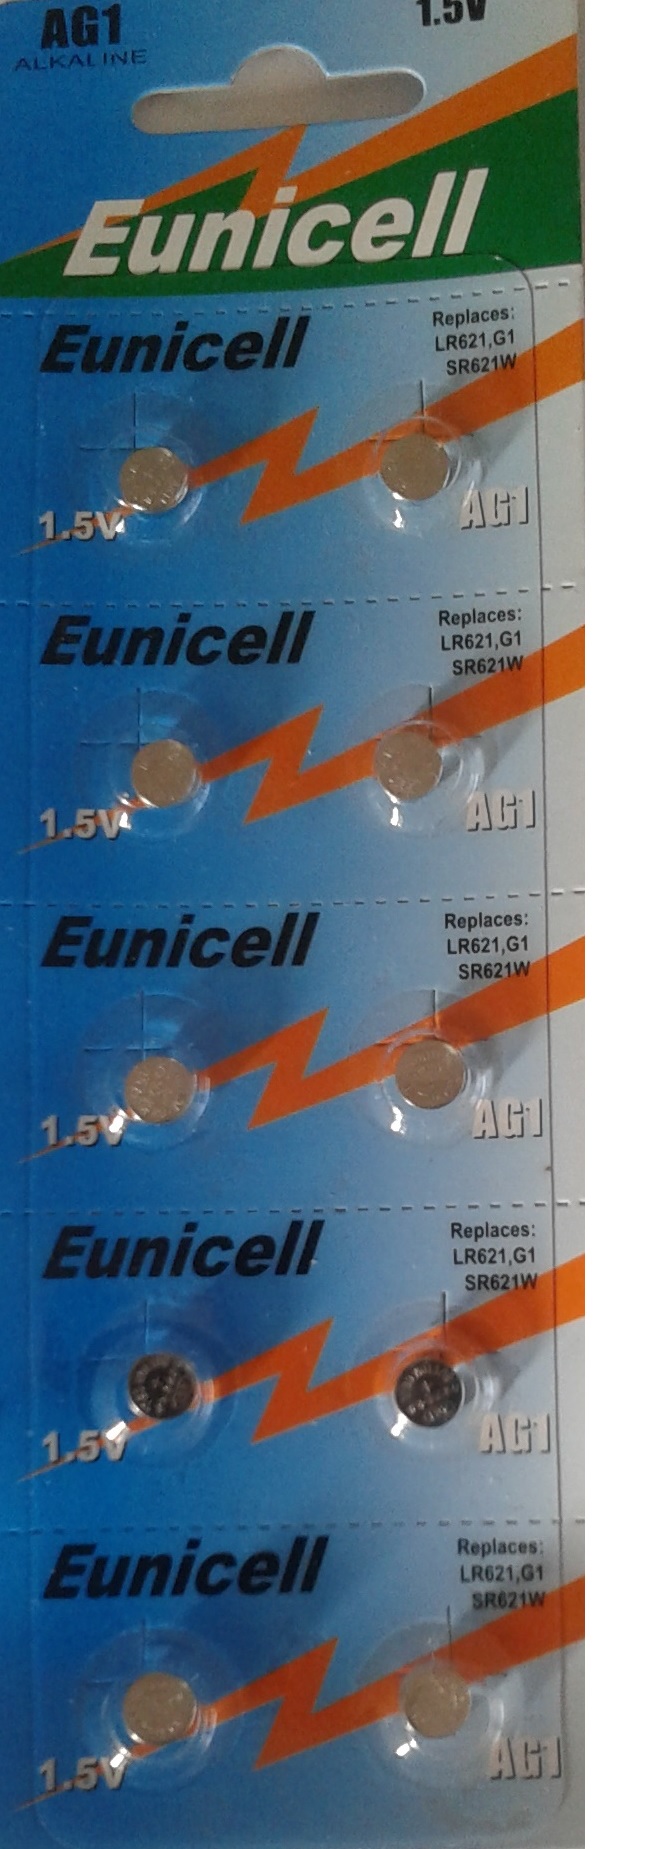 Eunicell ENVOI SOUS SUIVI EUNICELL Lot de 10 Piles bouton AG1 LR621 164 364 531 1,5V 